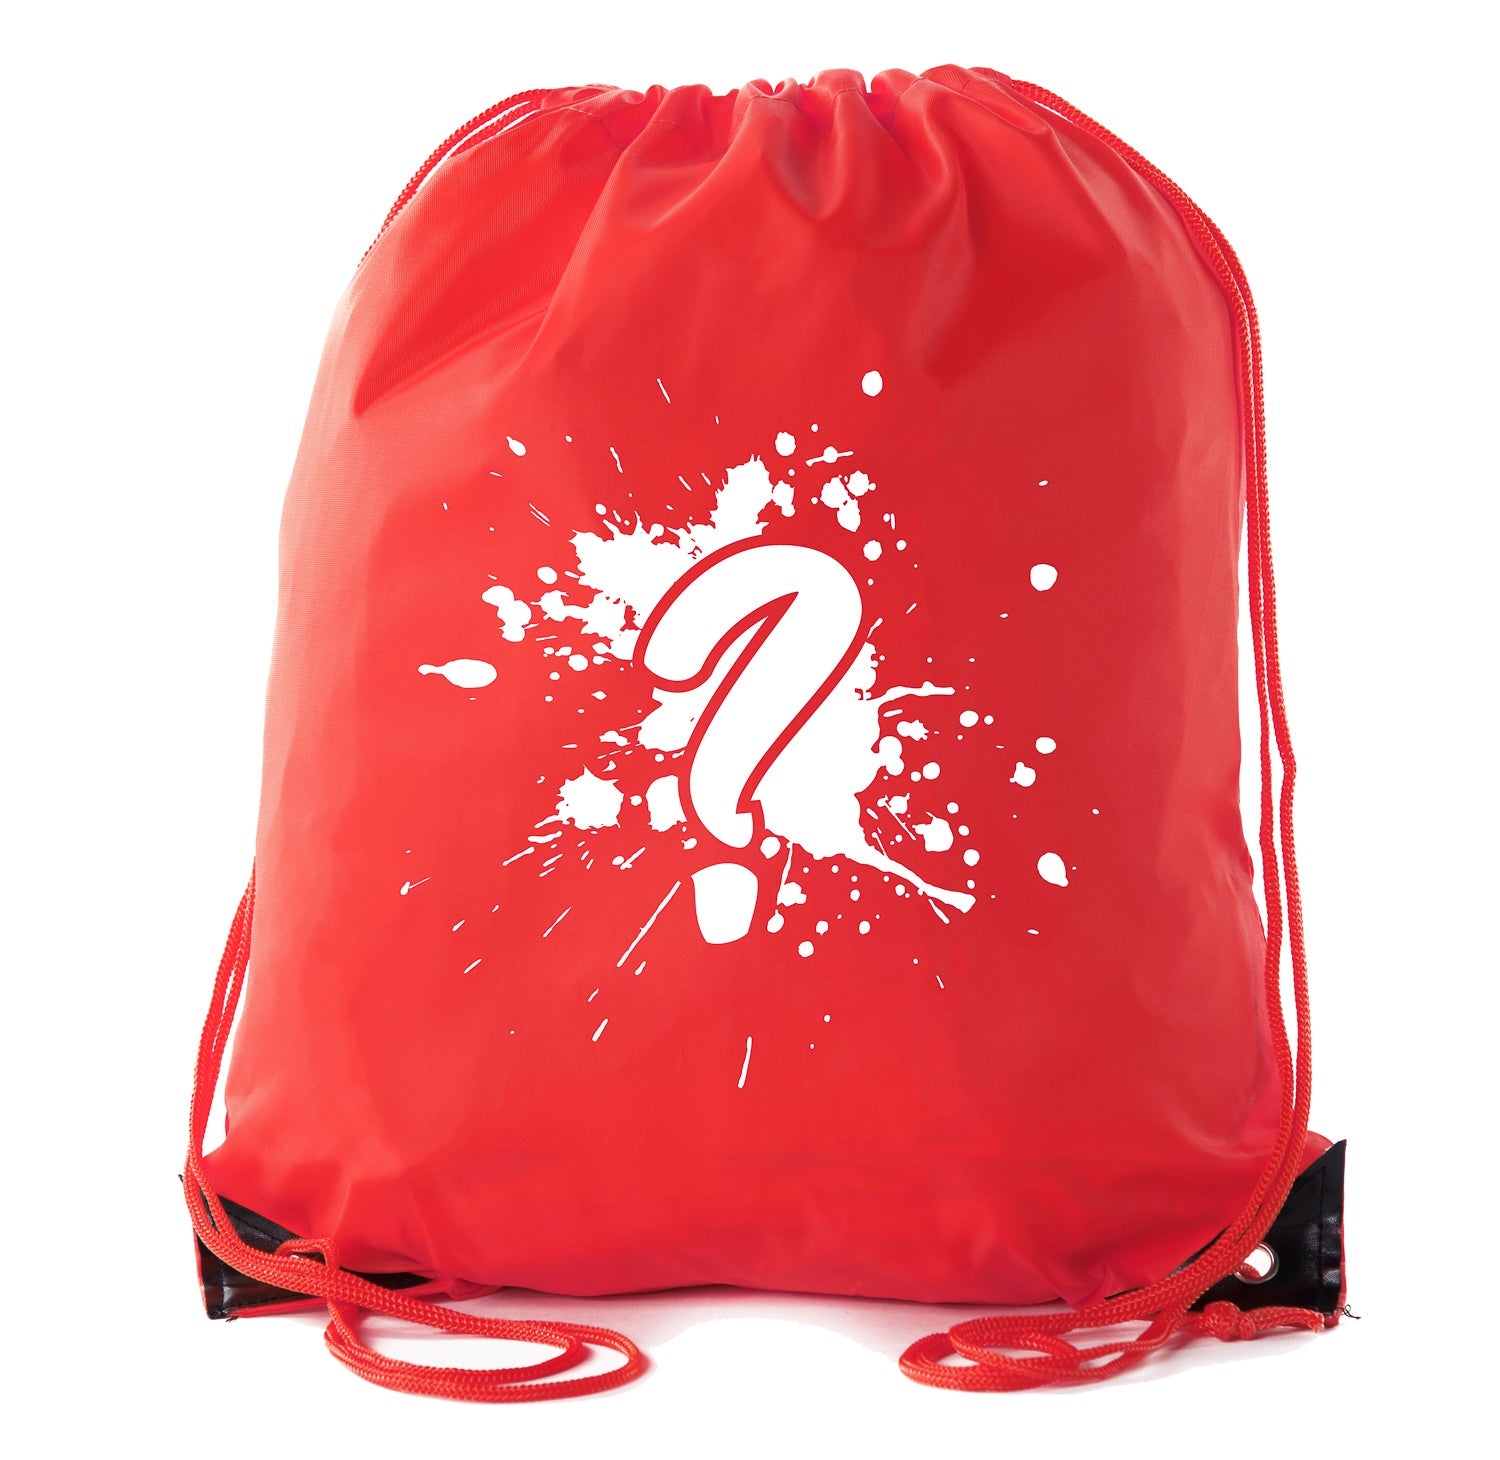 Waterproof Drawstring Bags